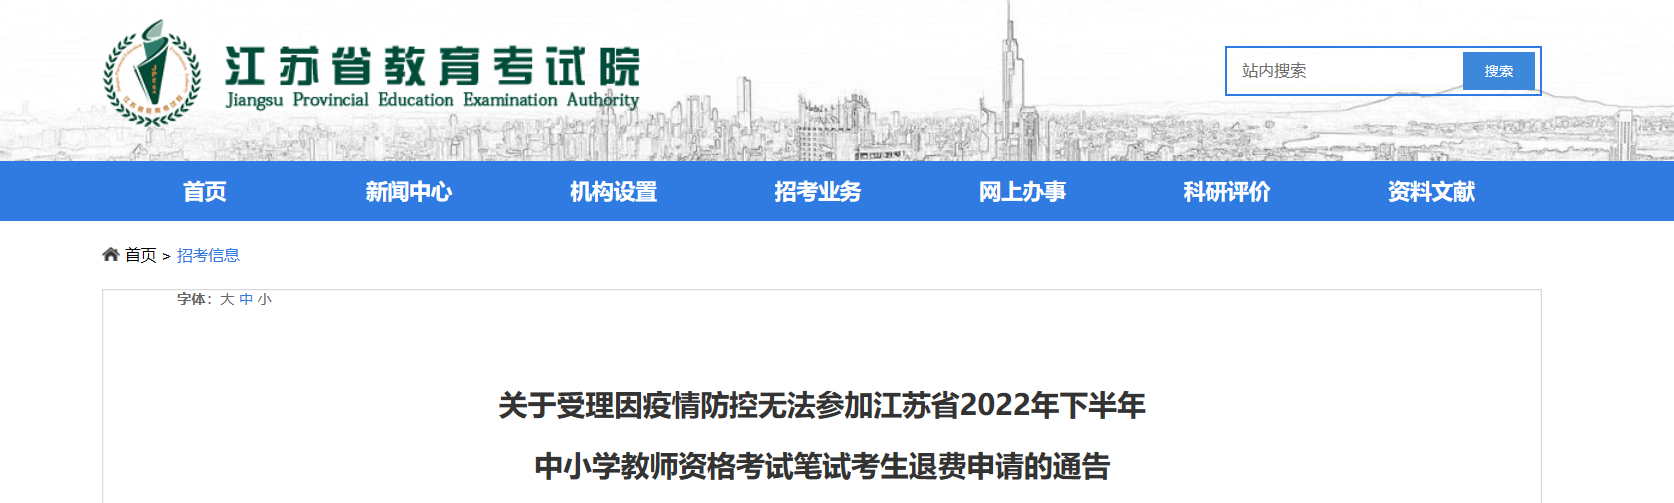 因疫情无法参加2022下半年江苏中小学教师资格考试笔试考生退费申请的通告